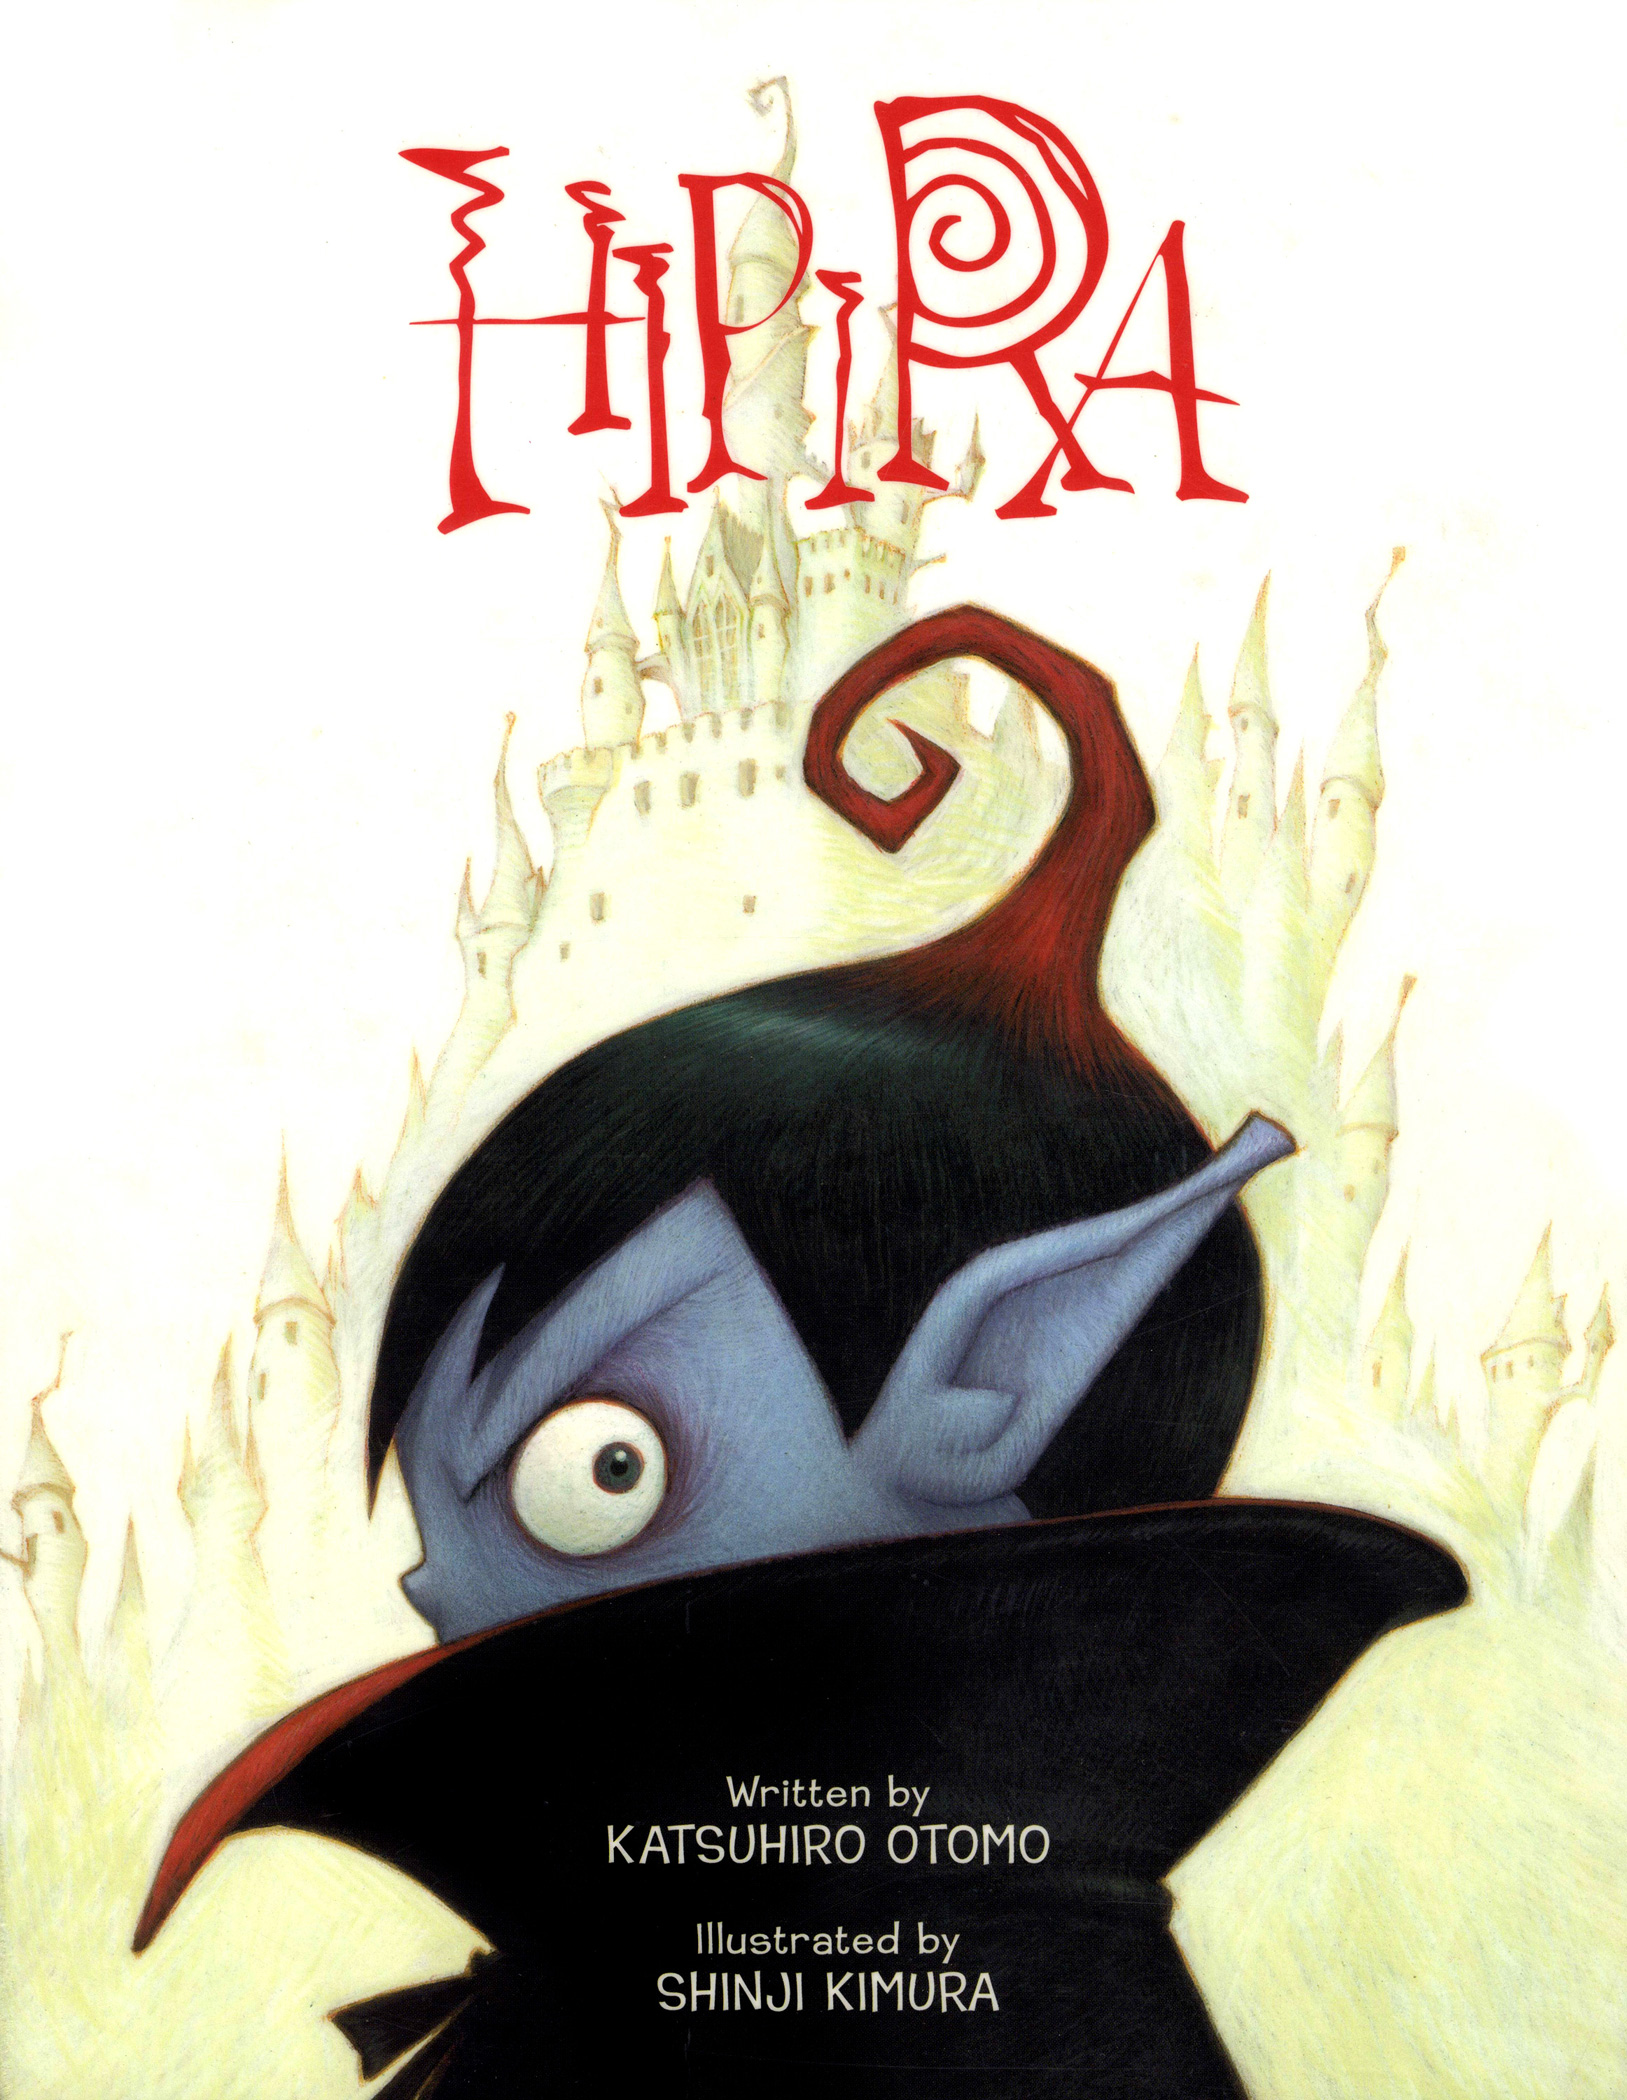 Hipira children’s book review